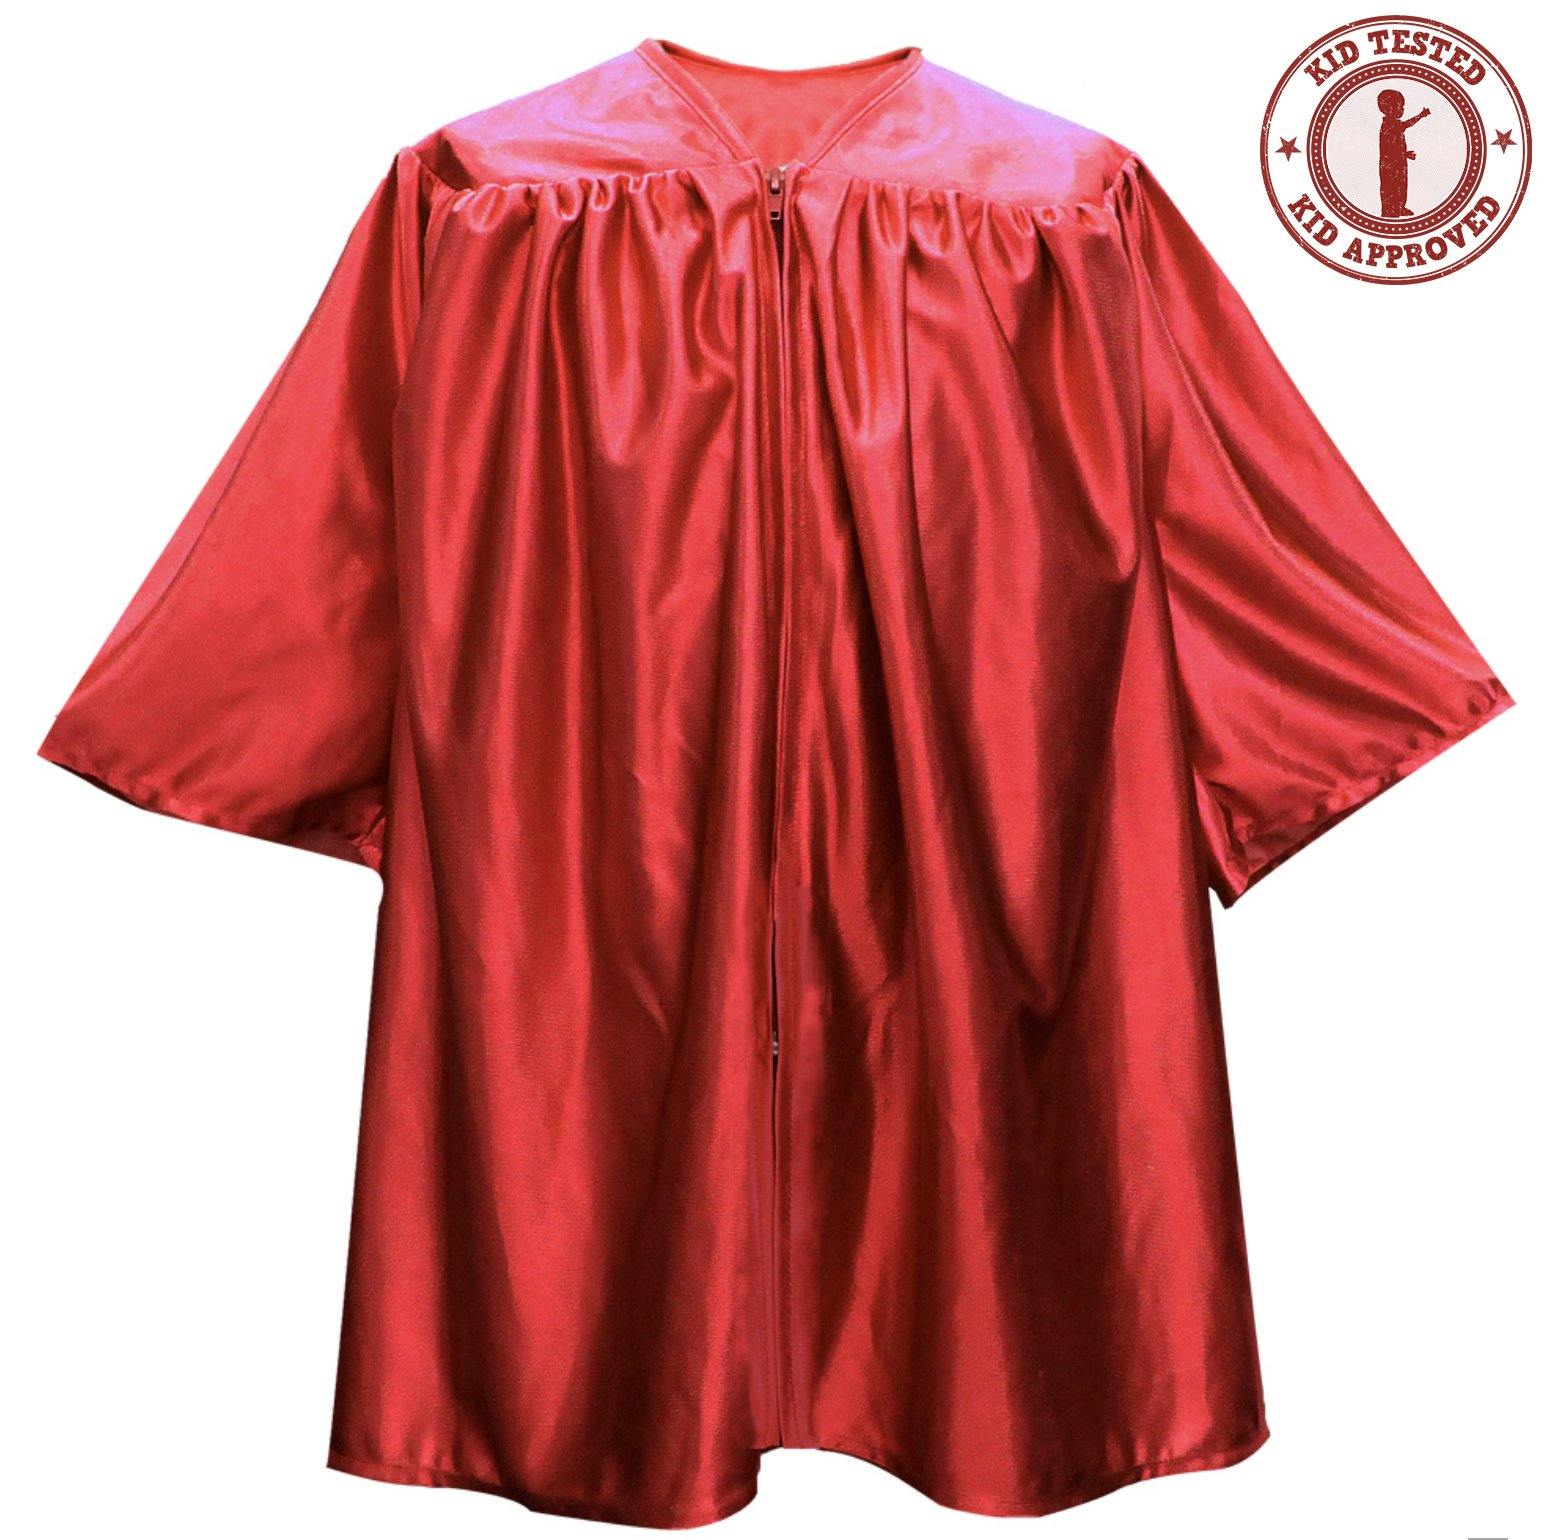 Child Red Graduation Gown - Preschool & Kindergarten Gowns - Graduation Attire